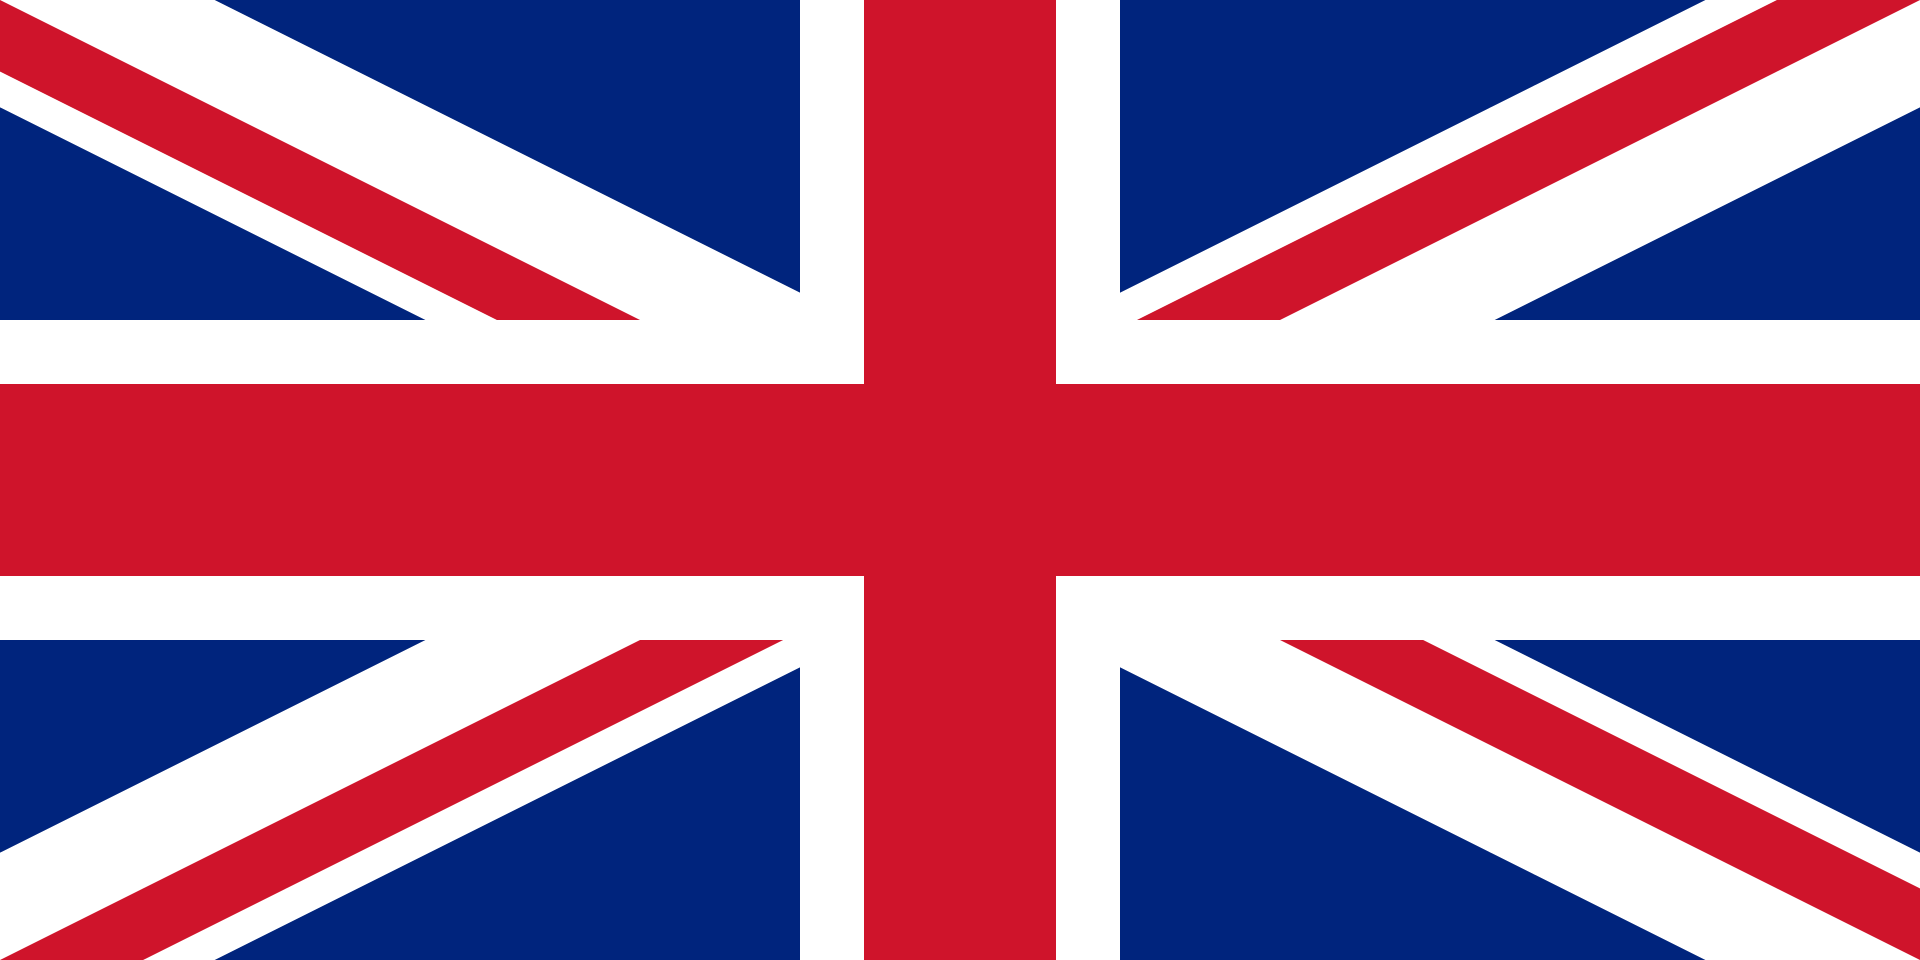 UK FLAG